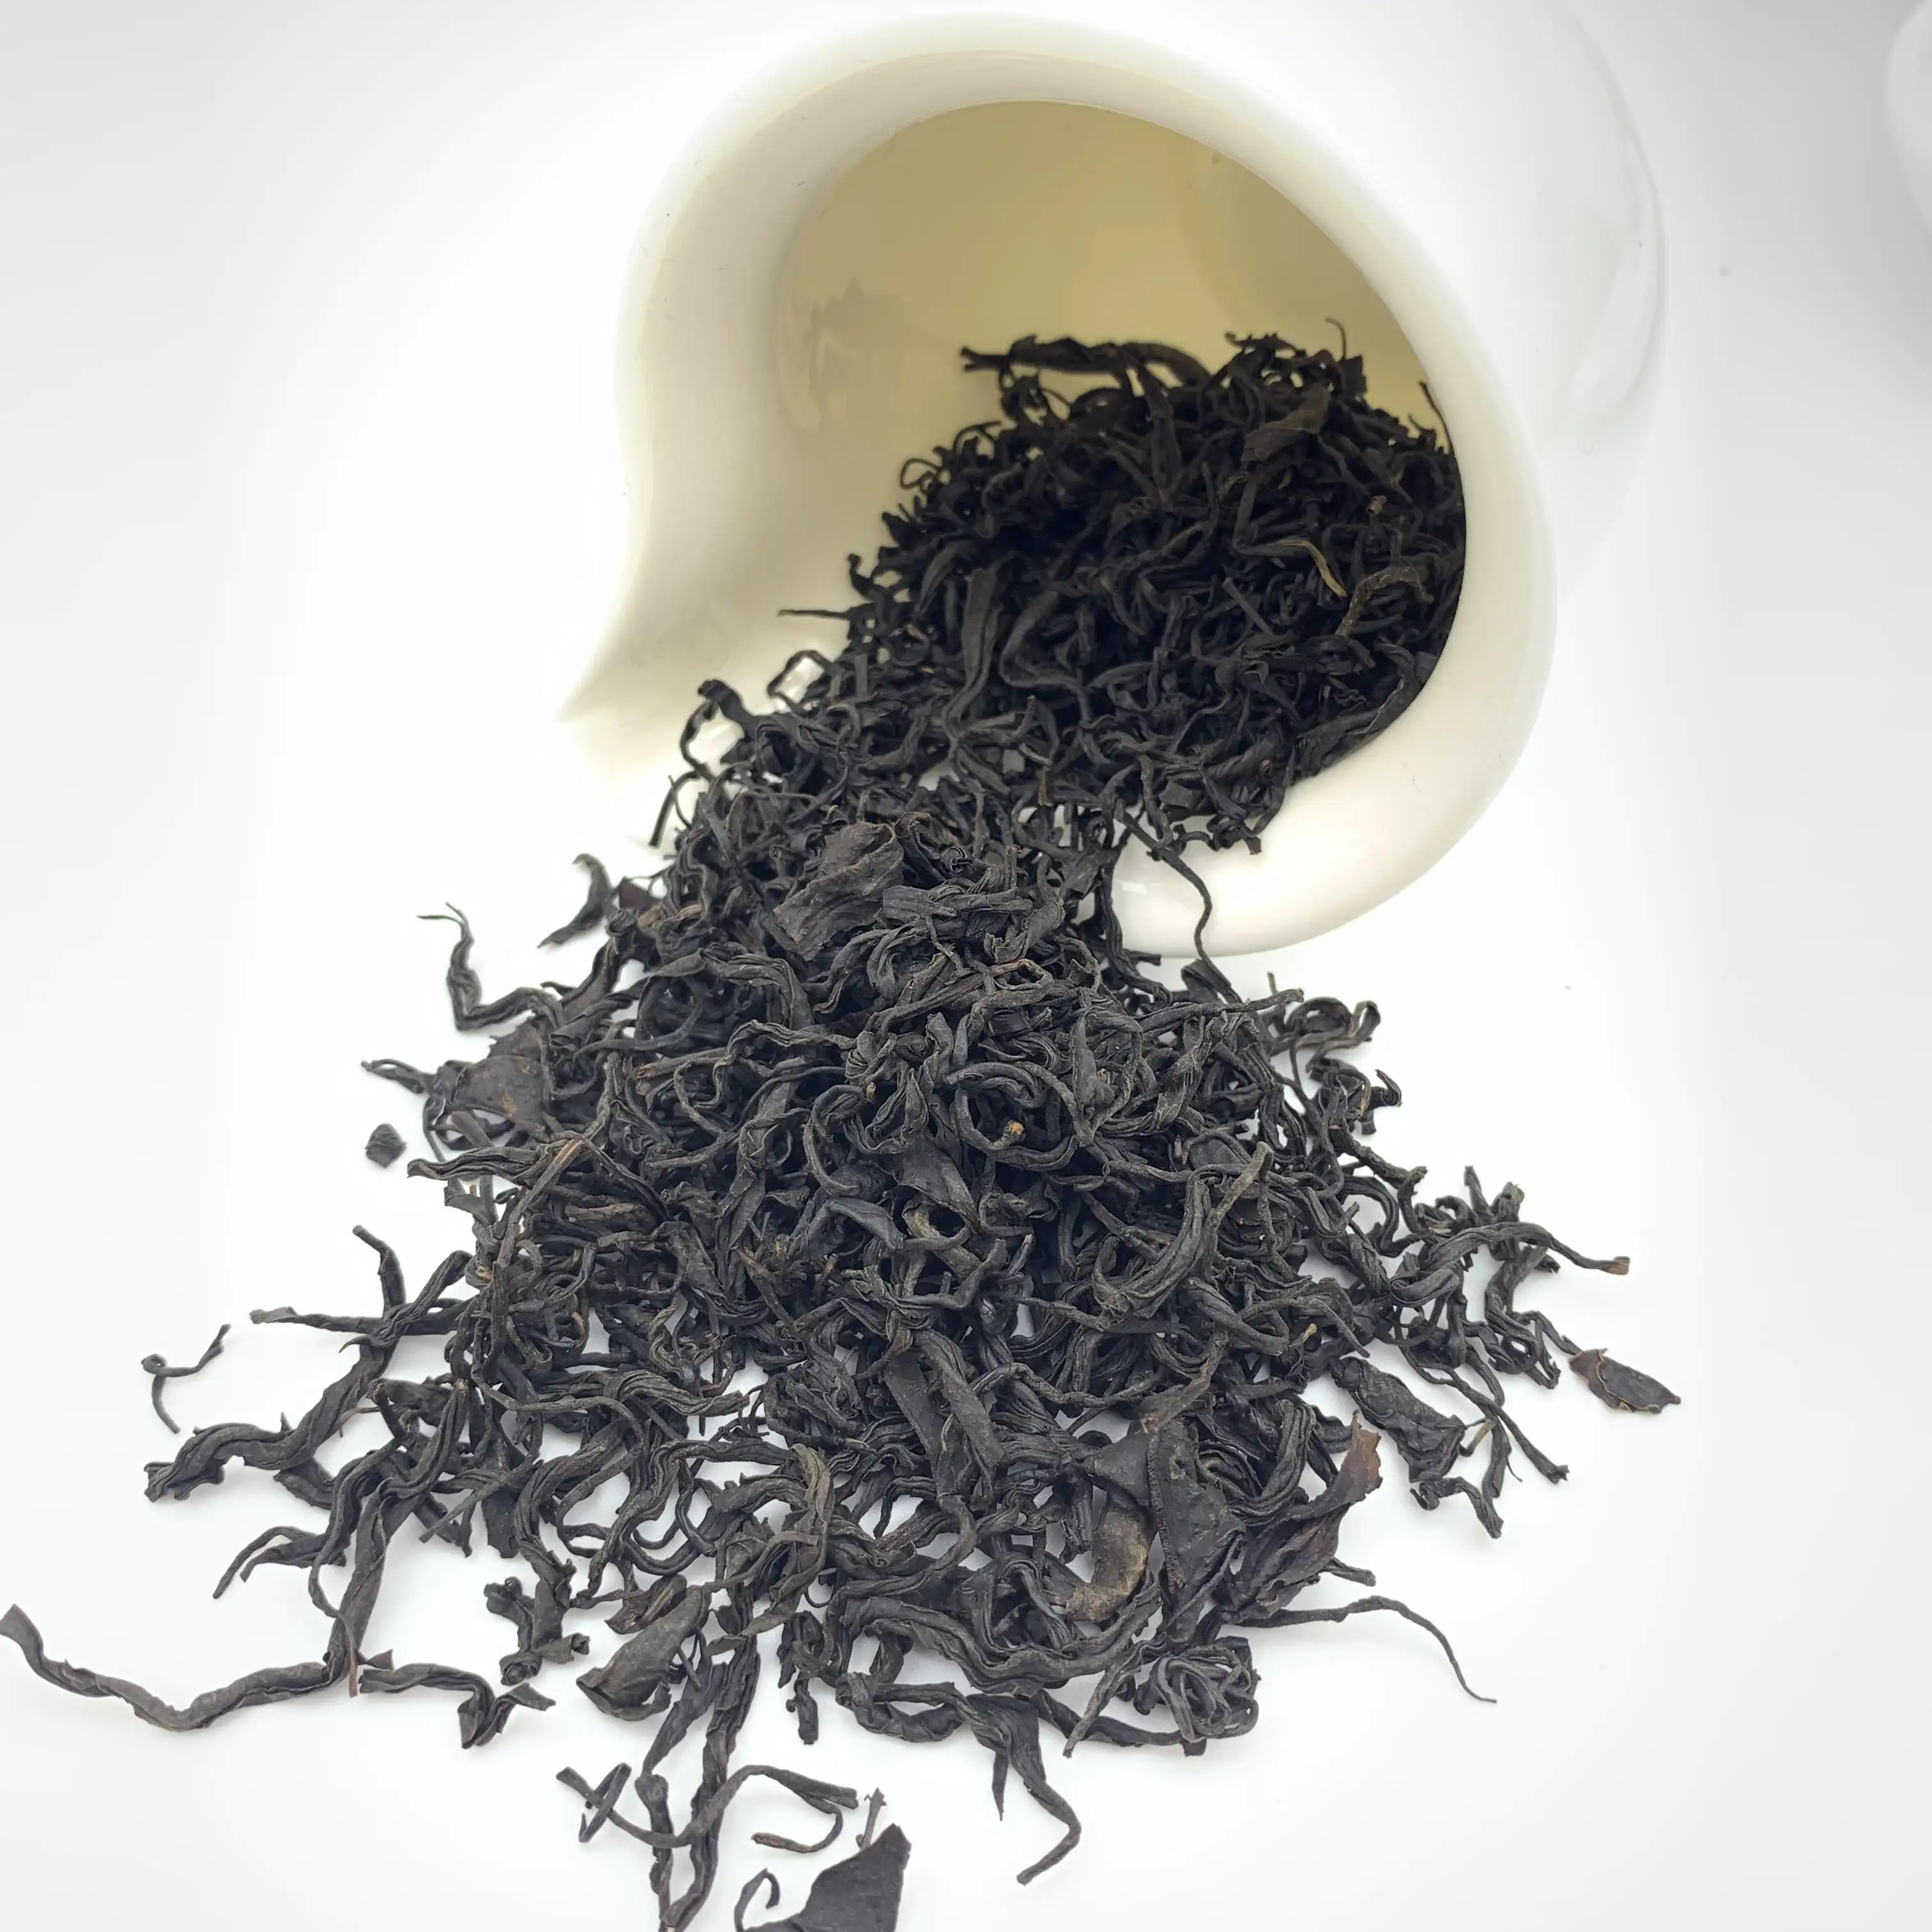 توريد مباشرة من الشاي الأسود H الشاي الأسود المعطر الشاي الأسود البرتقال بيكو الشاي الأسود